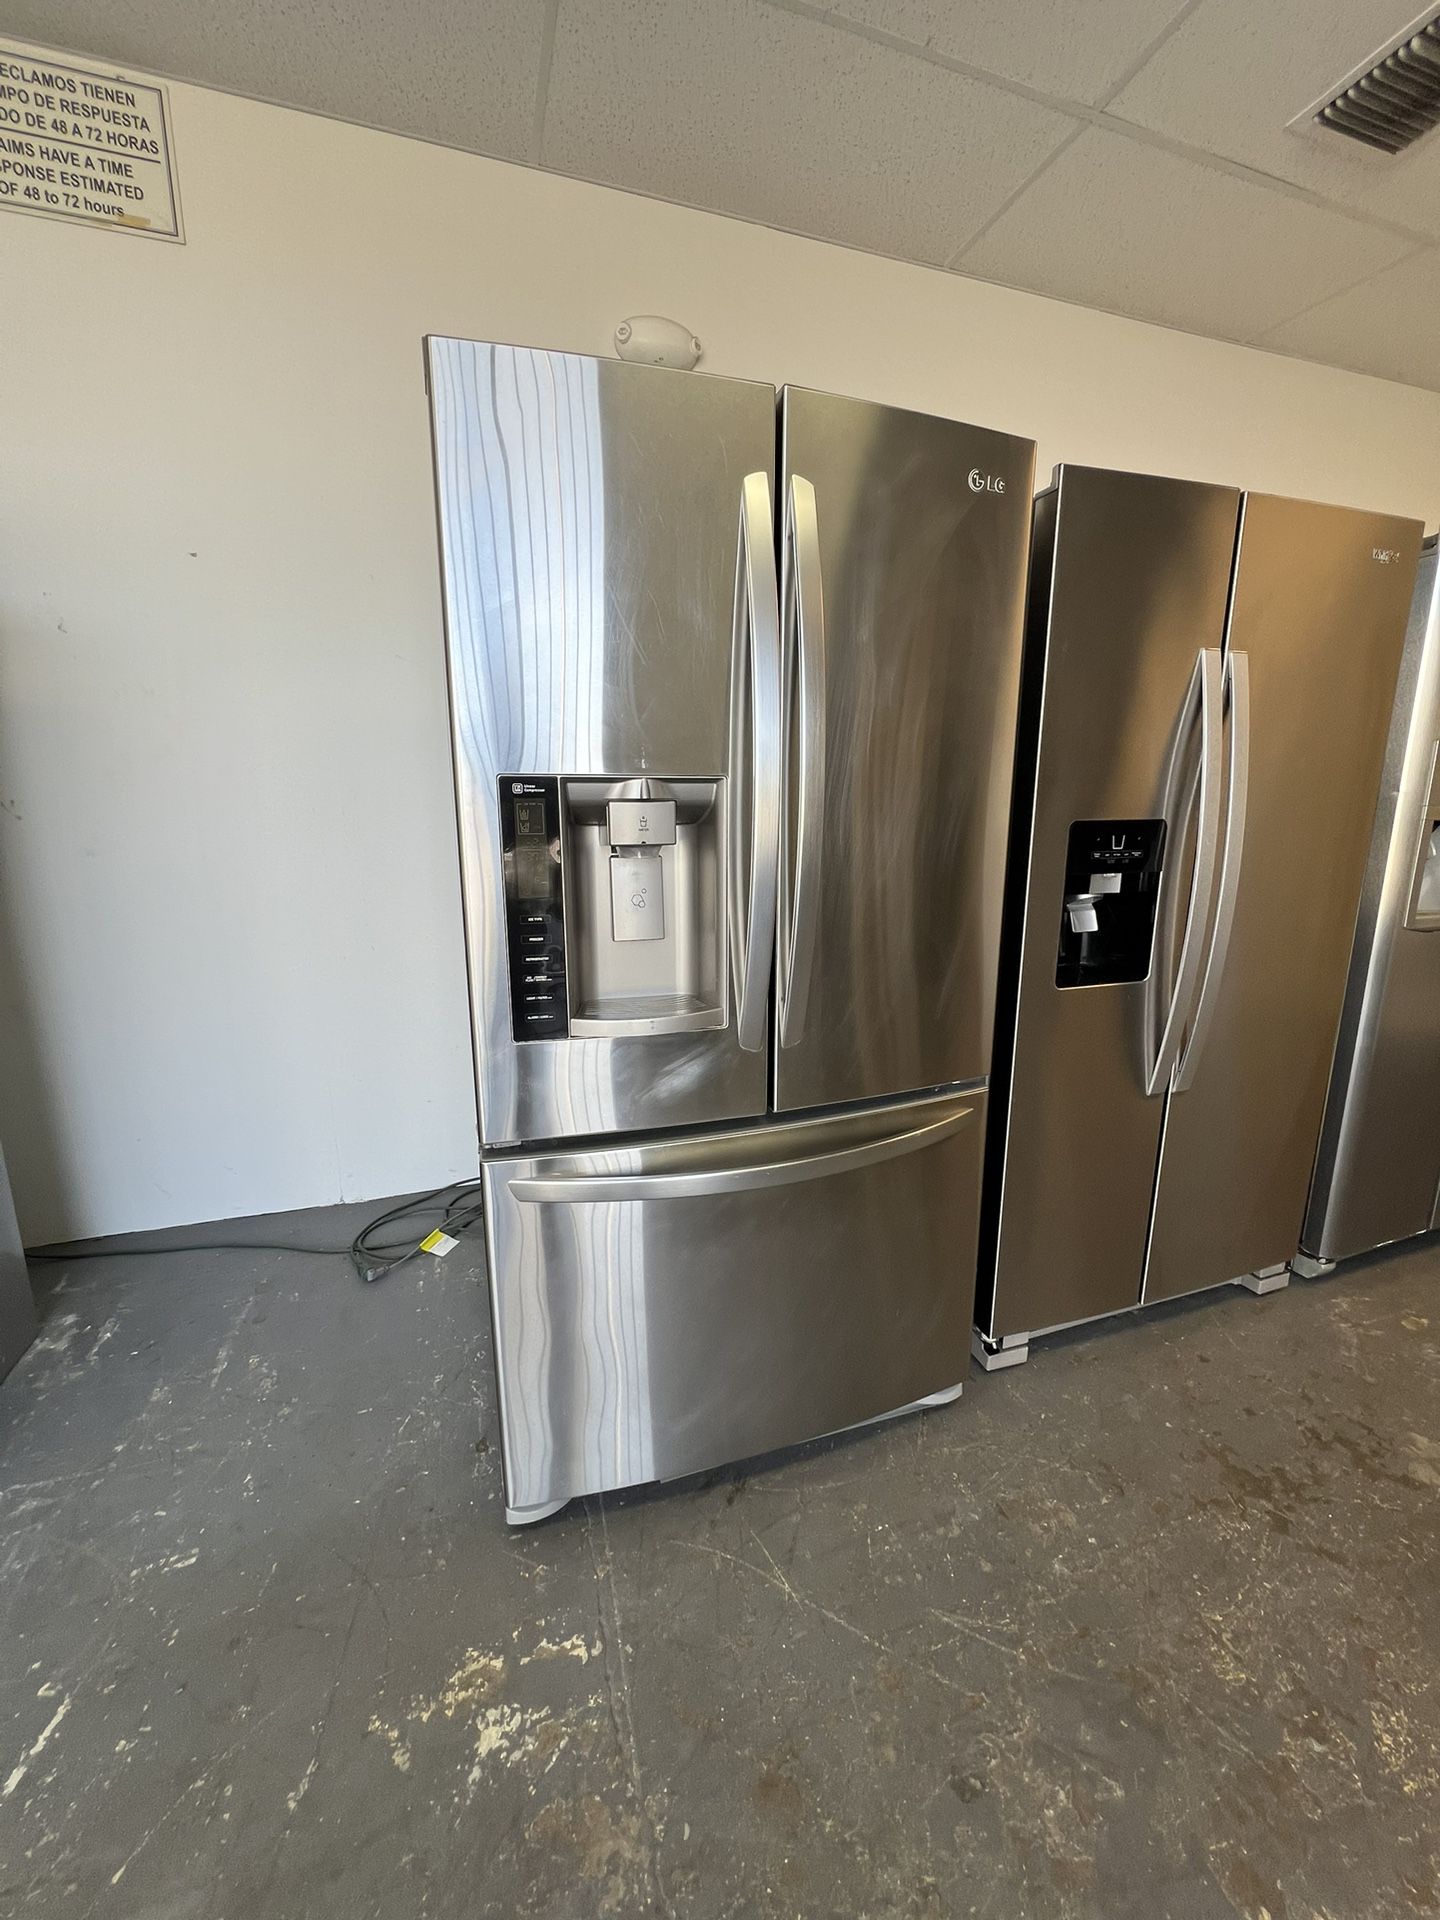 Refrigerator 2 Door 36 “ Wides 